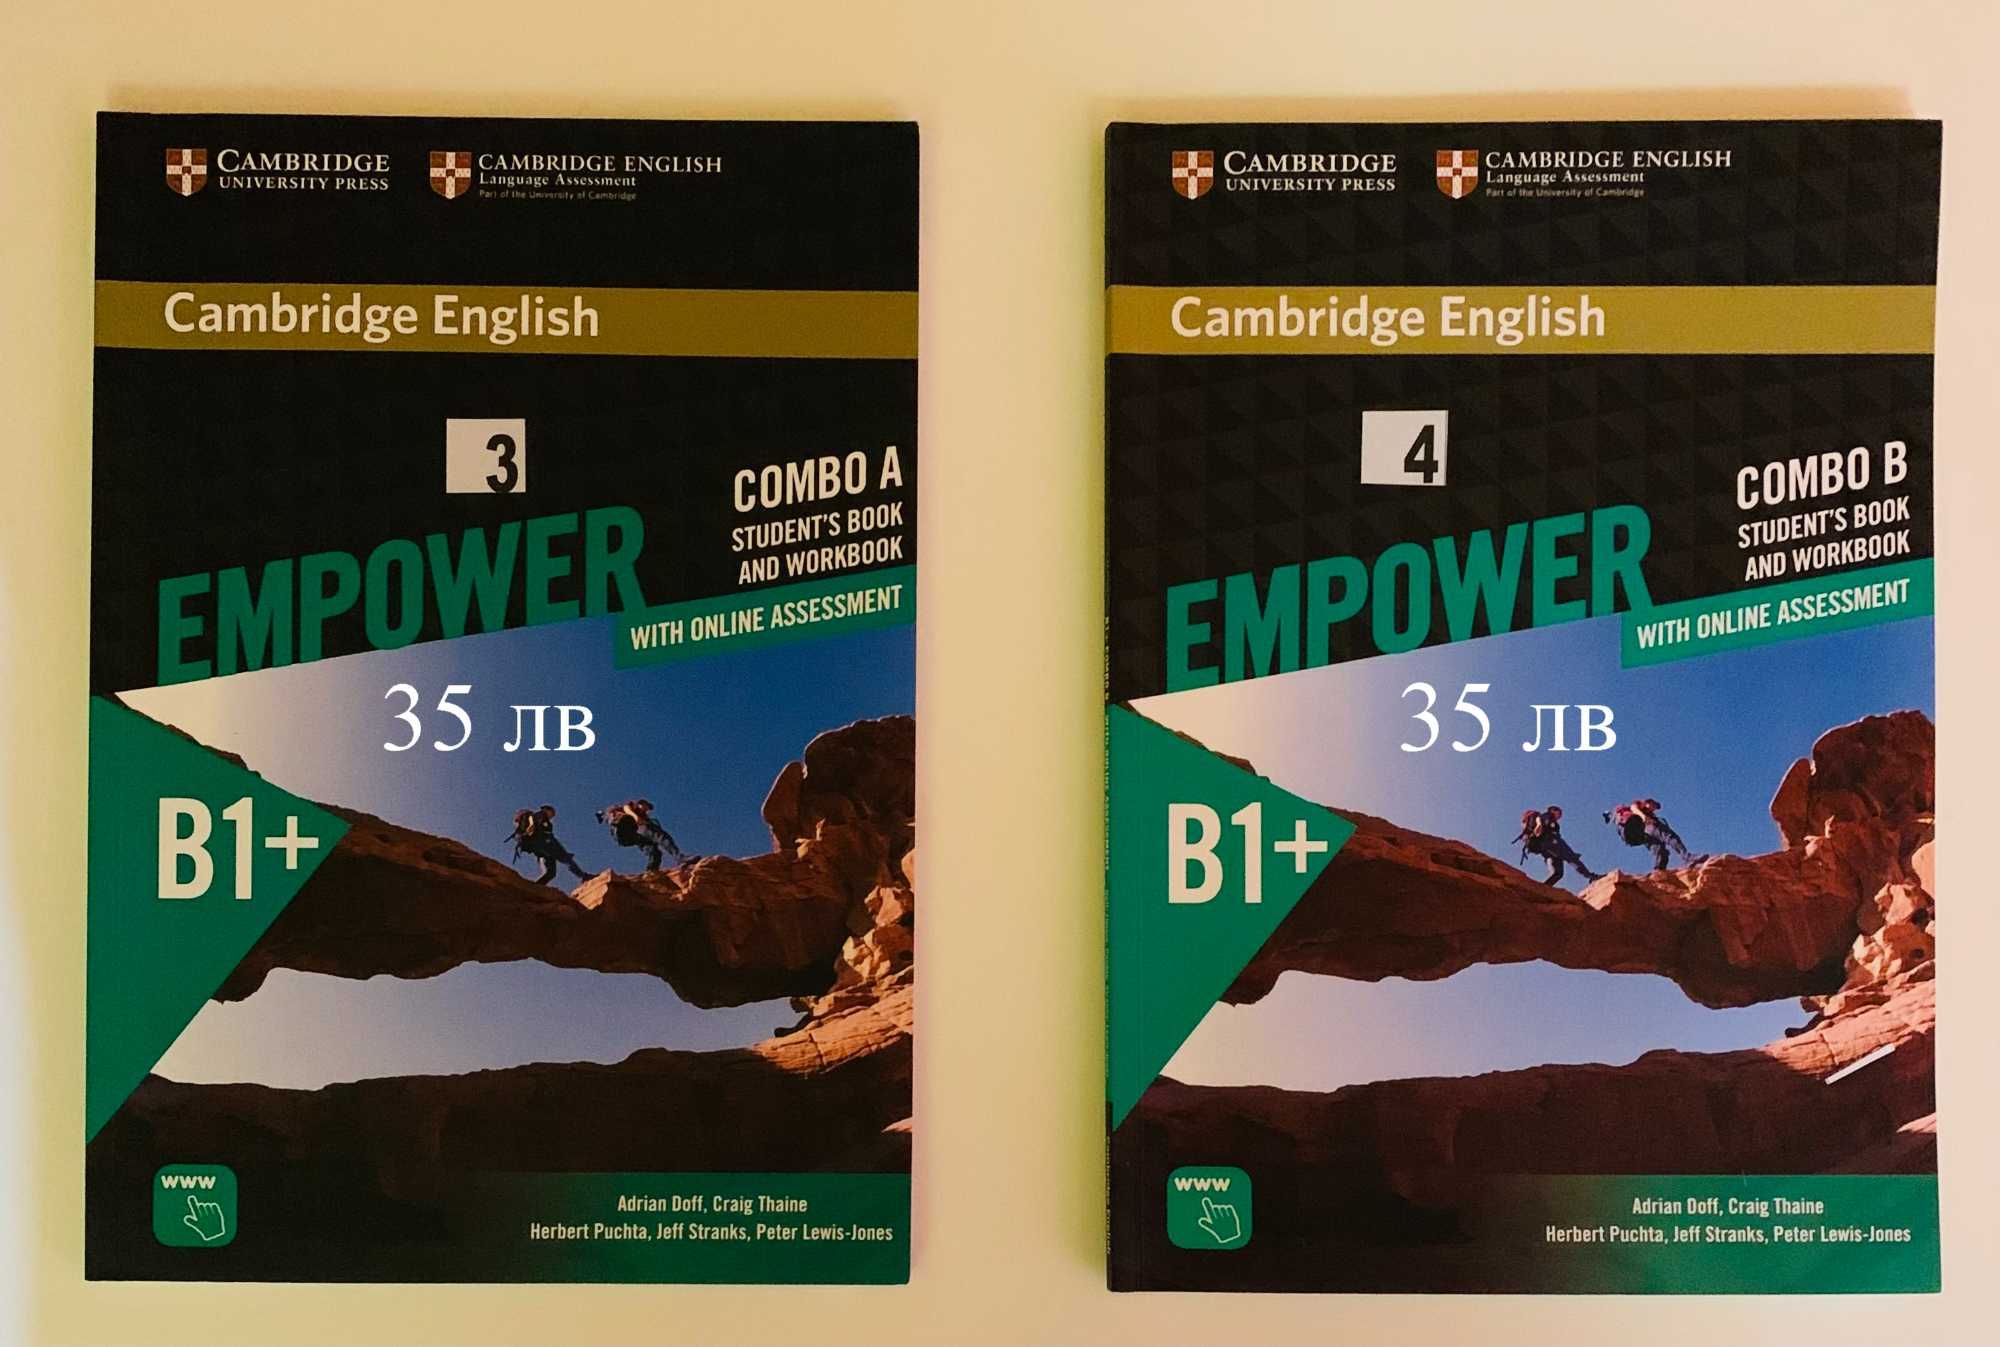 Учебници по английски В1+, В2 и В2+, вкл. и нови СД, всеки е с цена